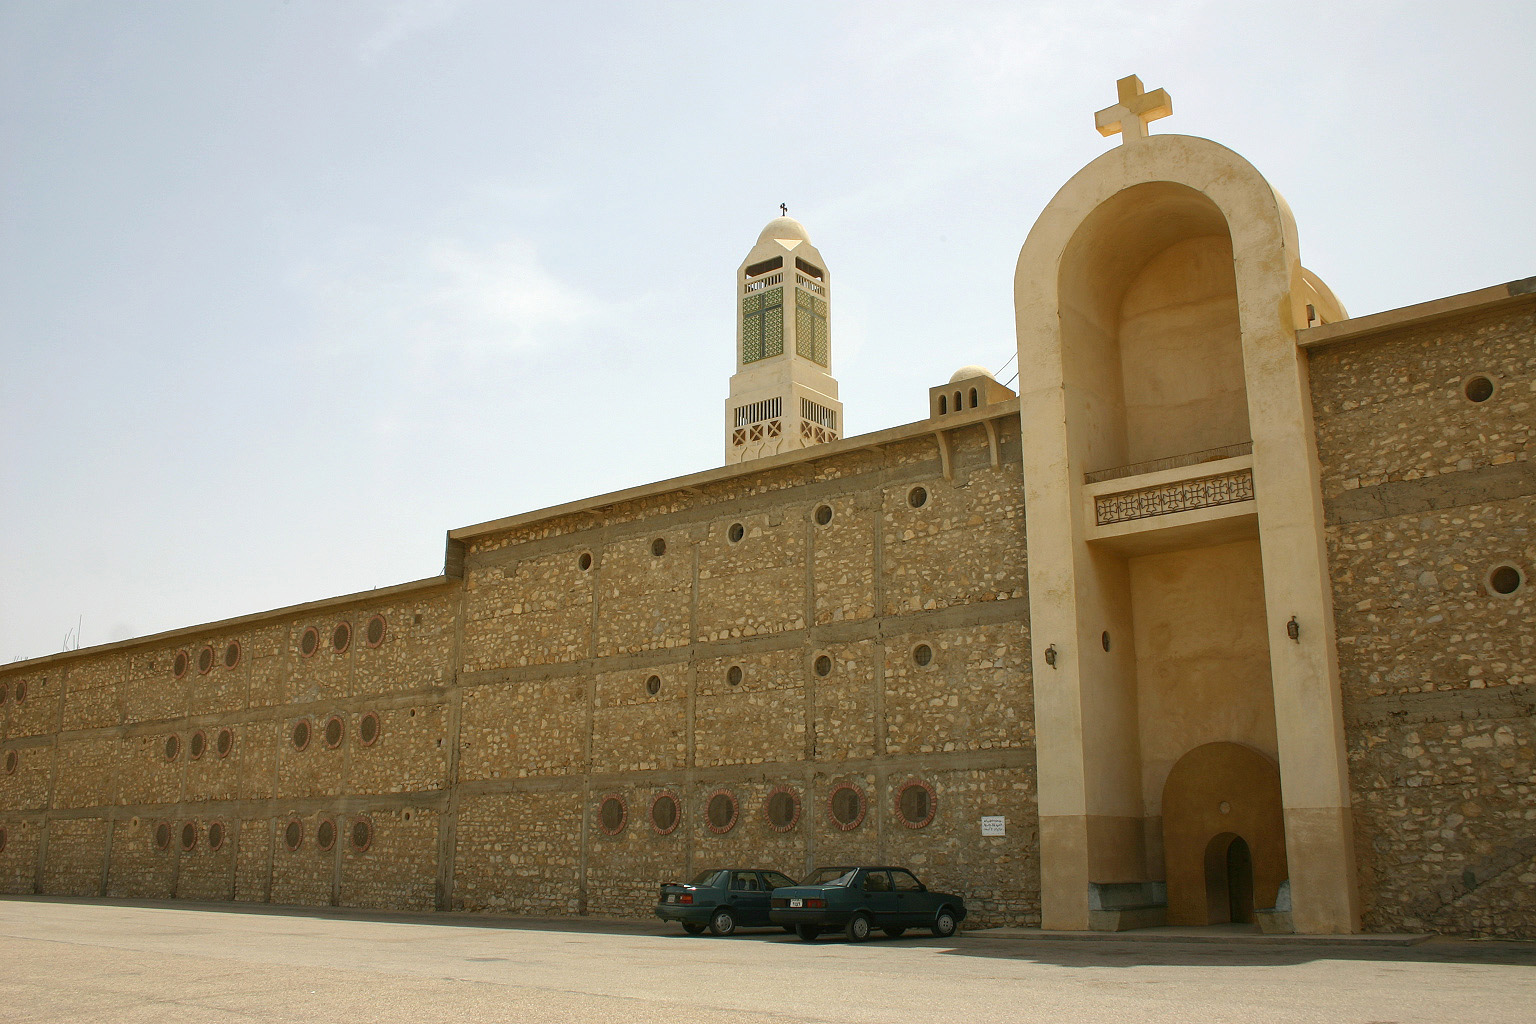 Das von Makarius gegründete und nach ihm benannte Kloster Abu Makar heute